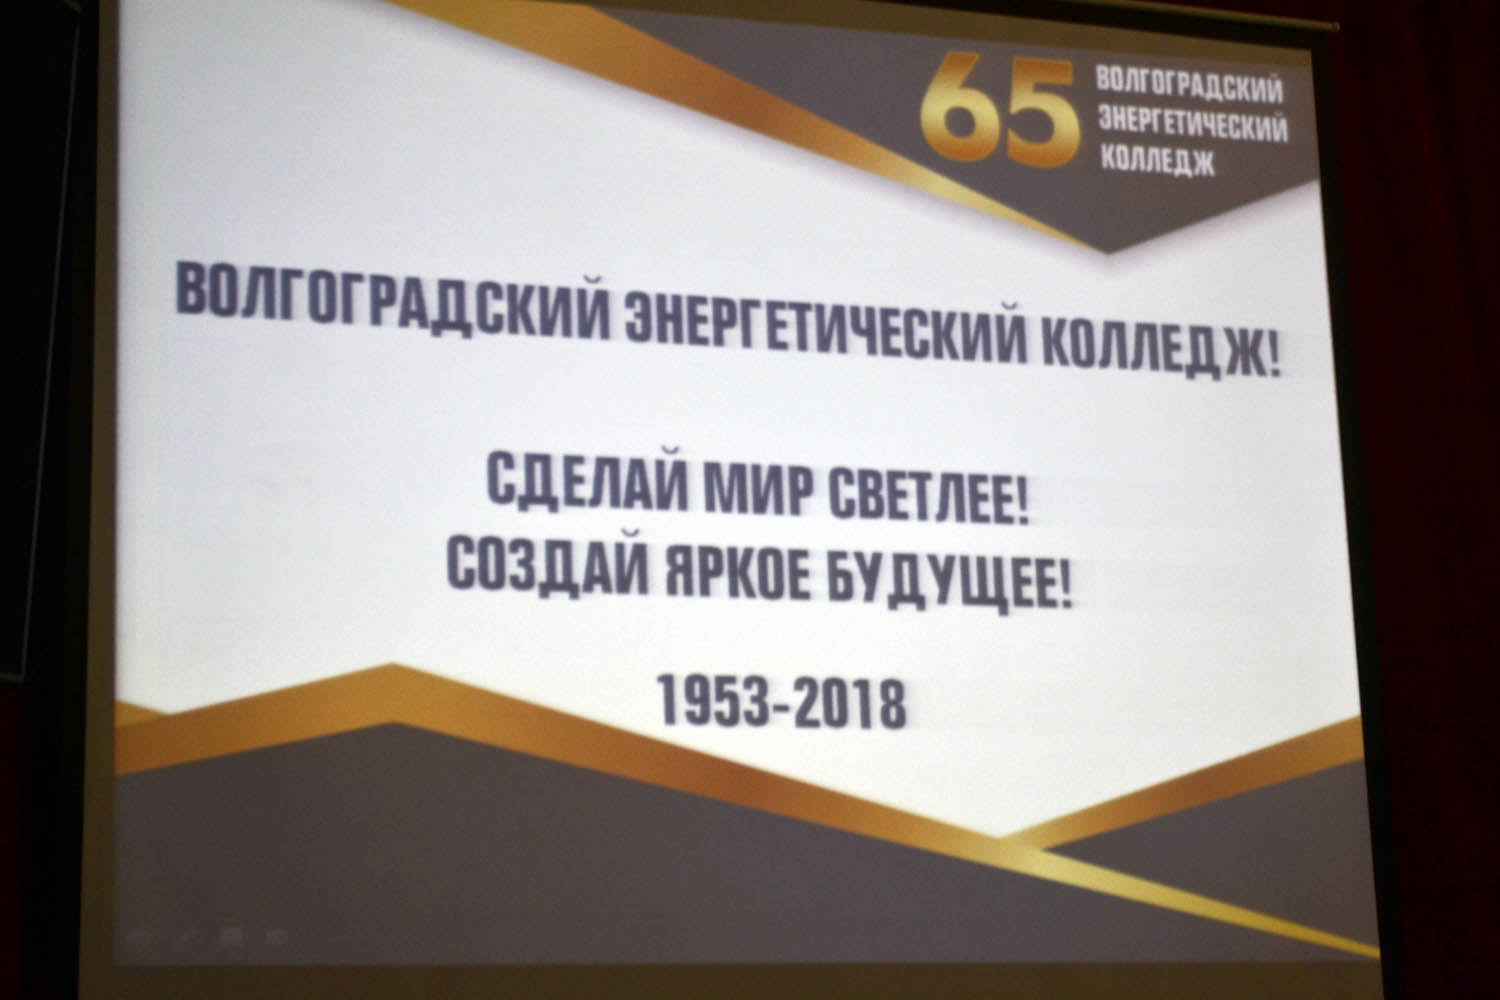 Юбилейные мероприятия в честь 65-летия Волгоградского энергетического колледжа продолжились в актовом зале, собравшем ветеранов, выпускников, сотрудников и преподавателей, студентов ГБПОУ «ВЭК»